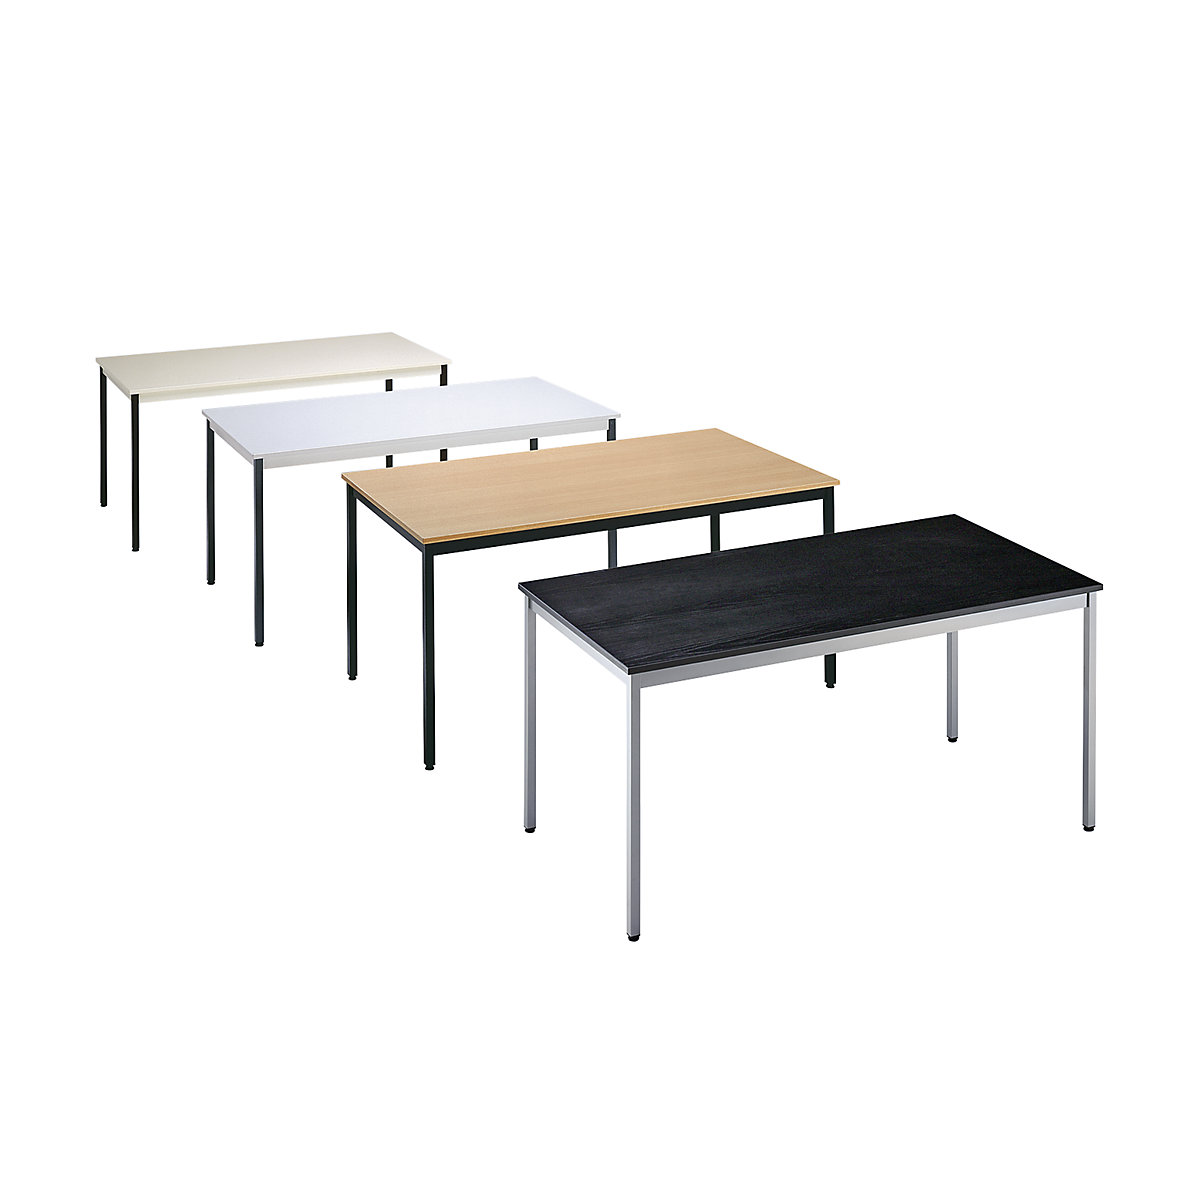 Table polyvalente – eurokraft basic, rectangulaire, h x l x p 740 x 700 x 600 mm, plateau façon érable, piétement aluminium-1